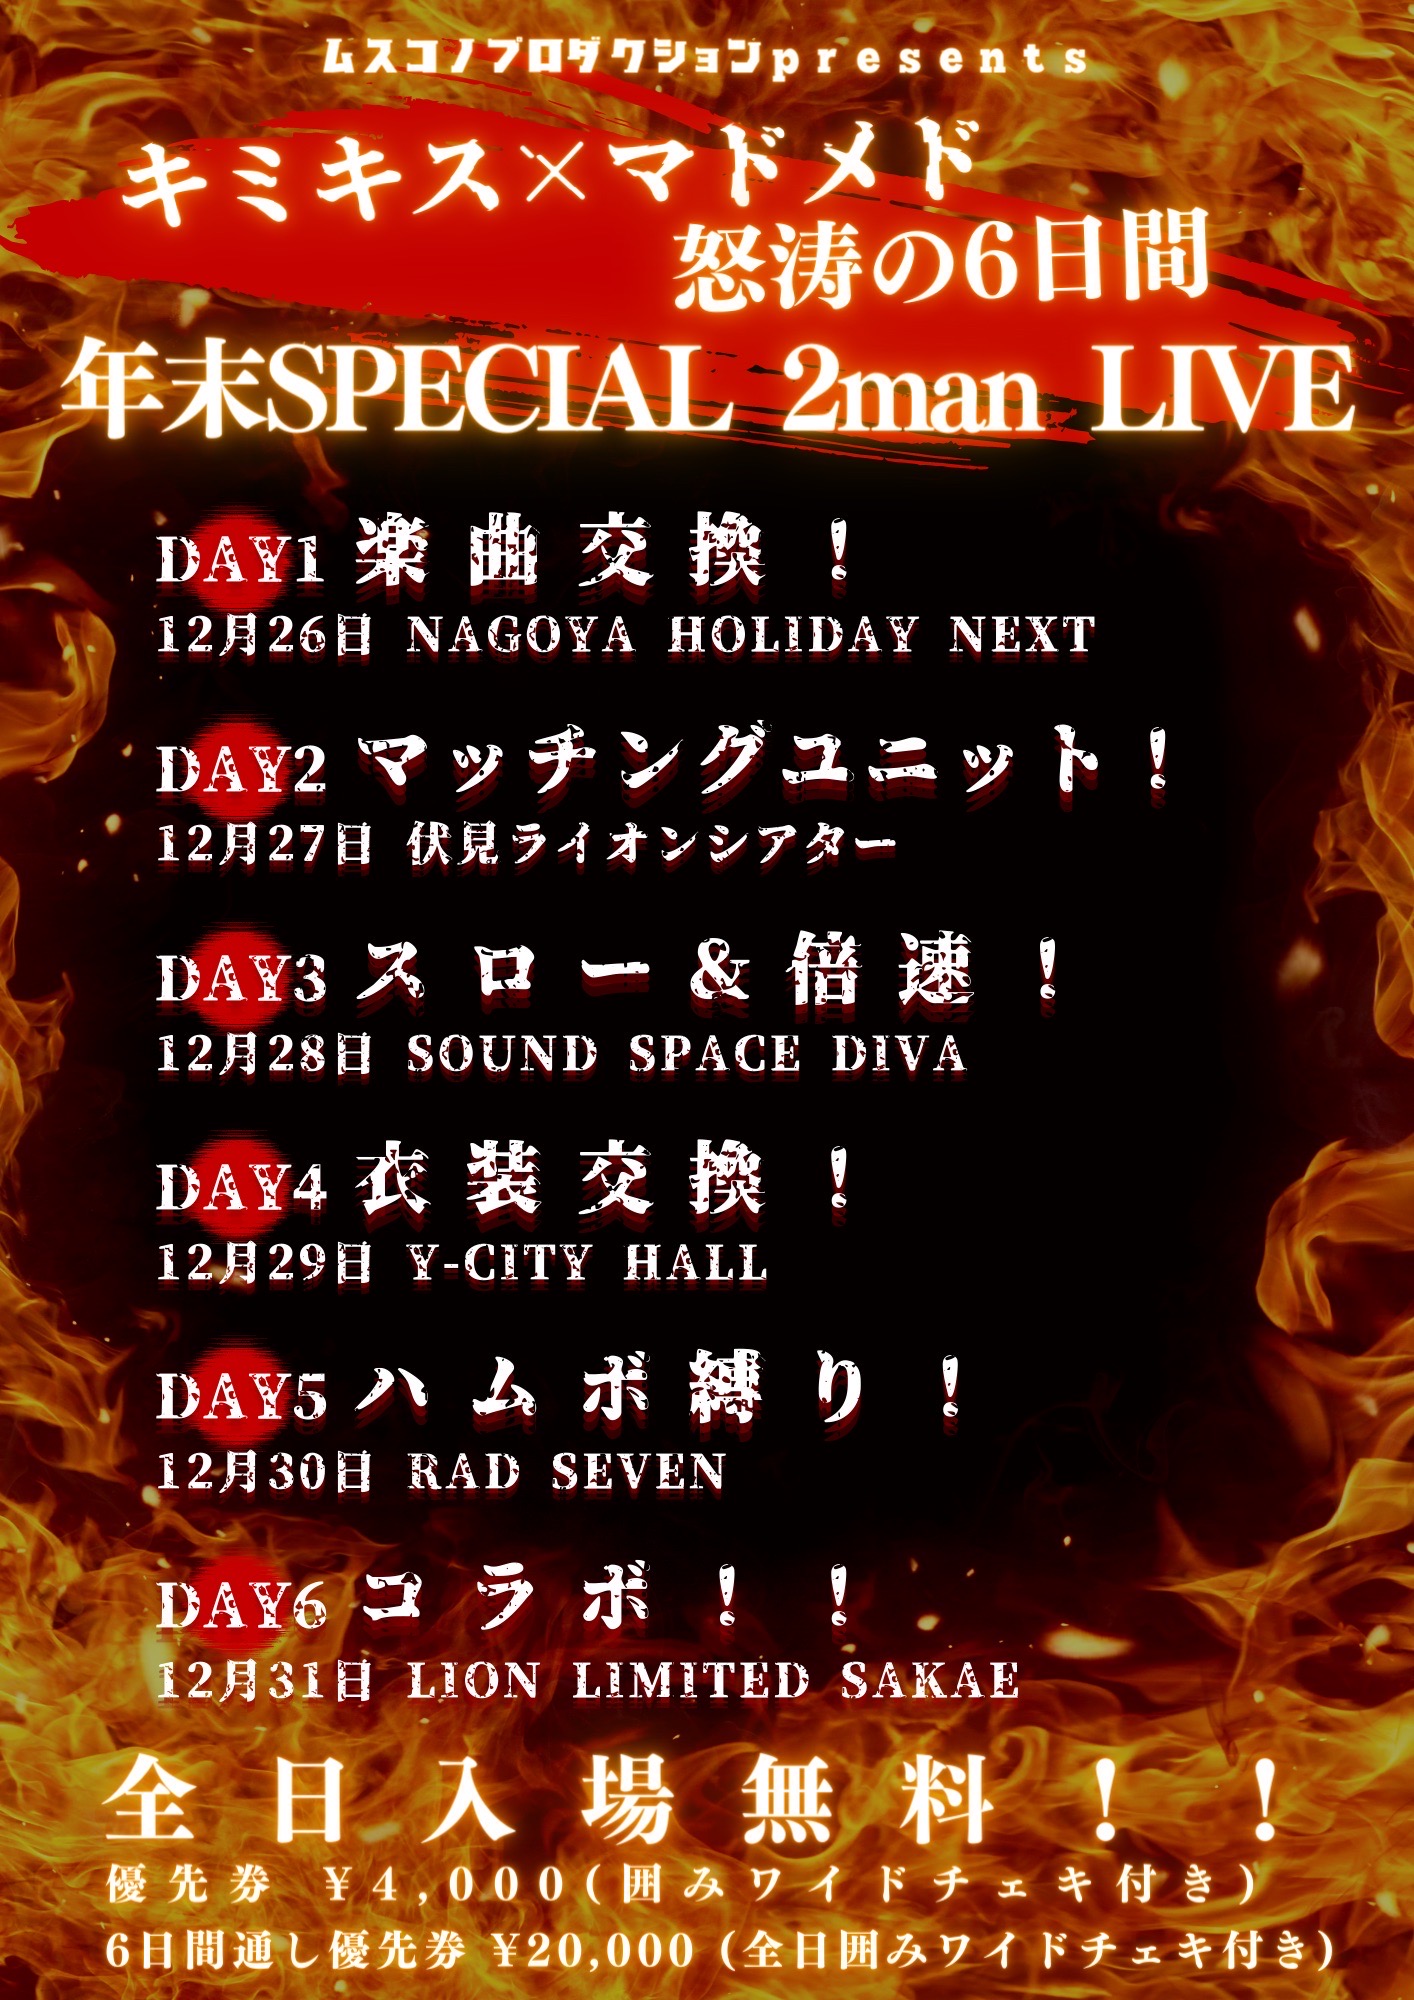 キミキス×マドメド怒涛の6日間年末SPECIAL 2man LIVE【DAY2】